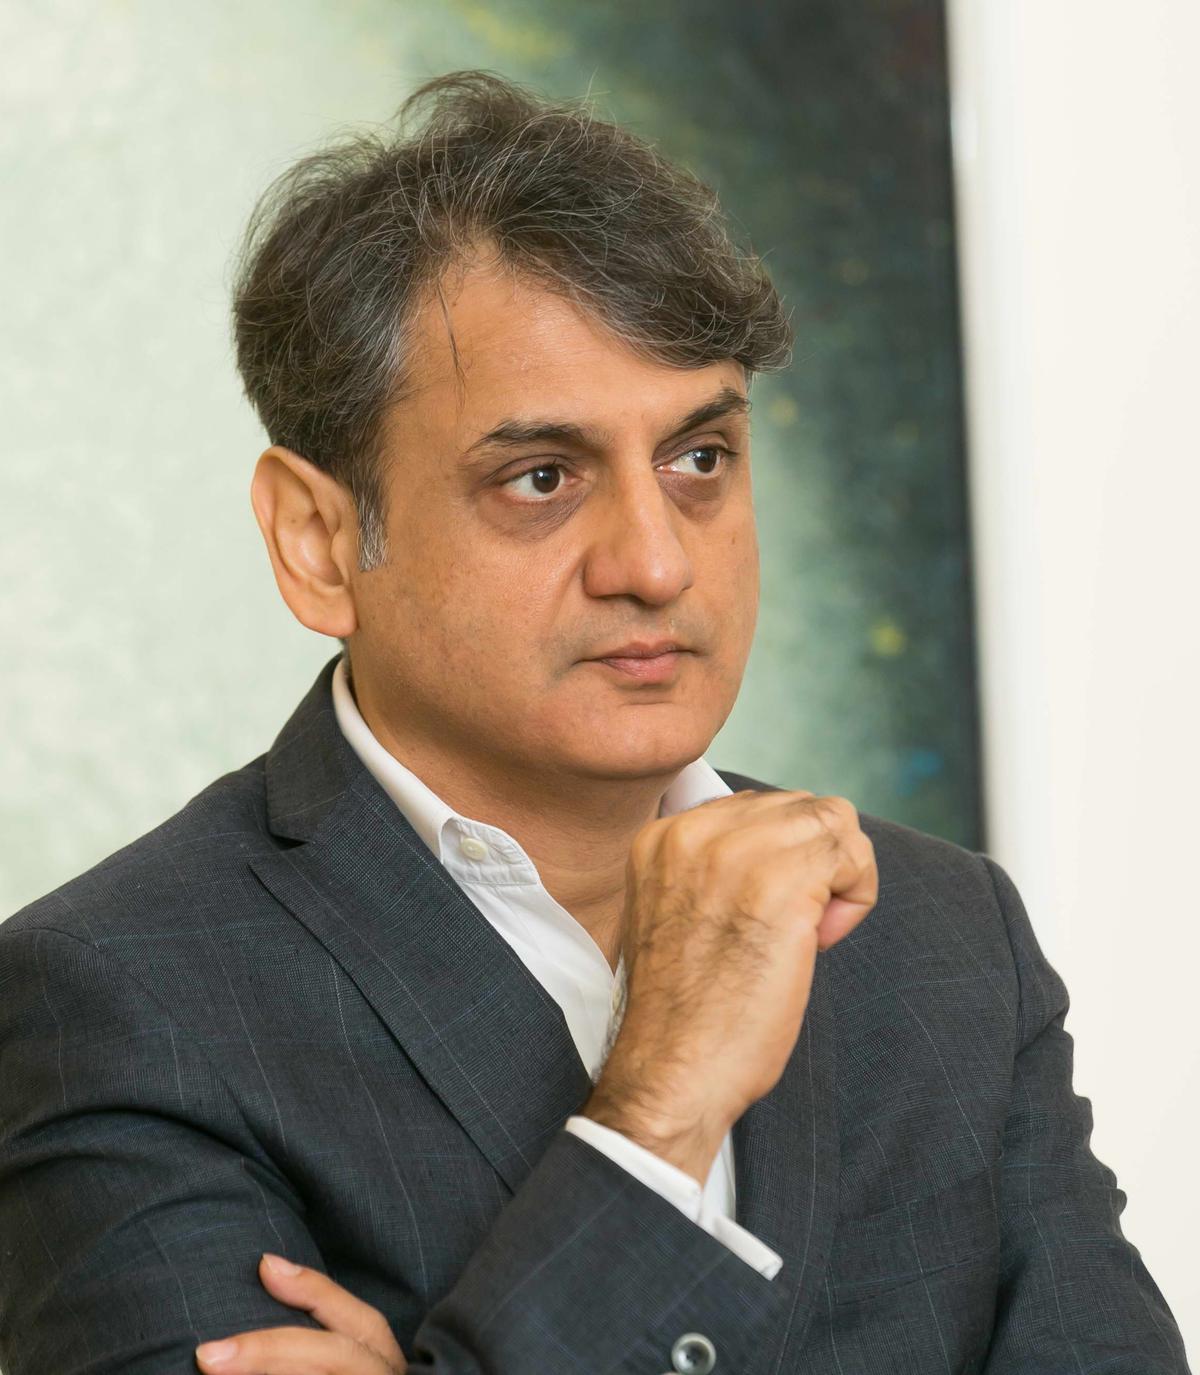 DAG CEO Ashish Anand